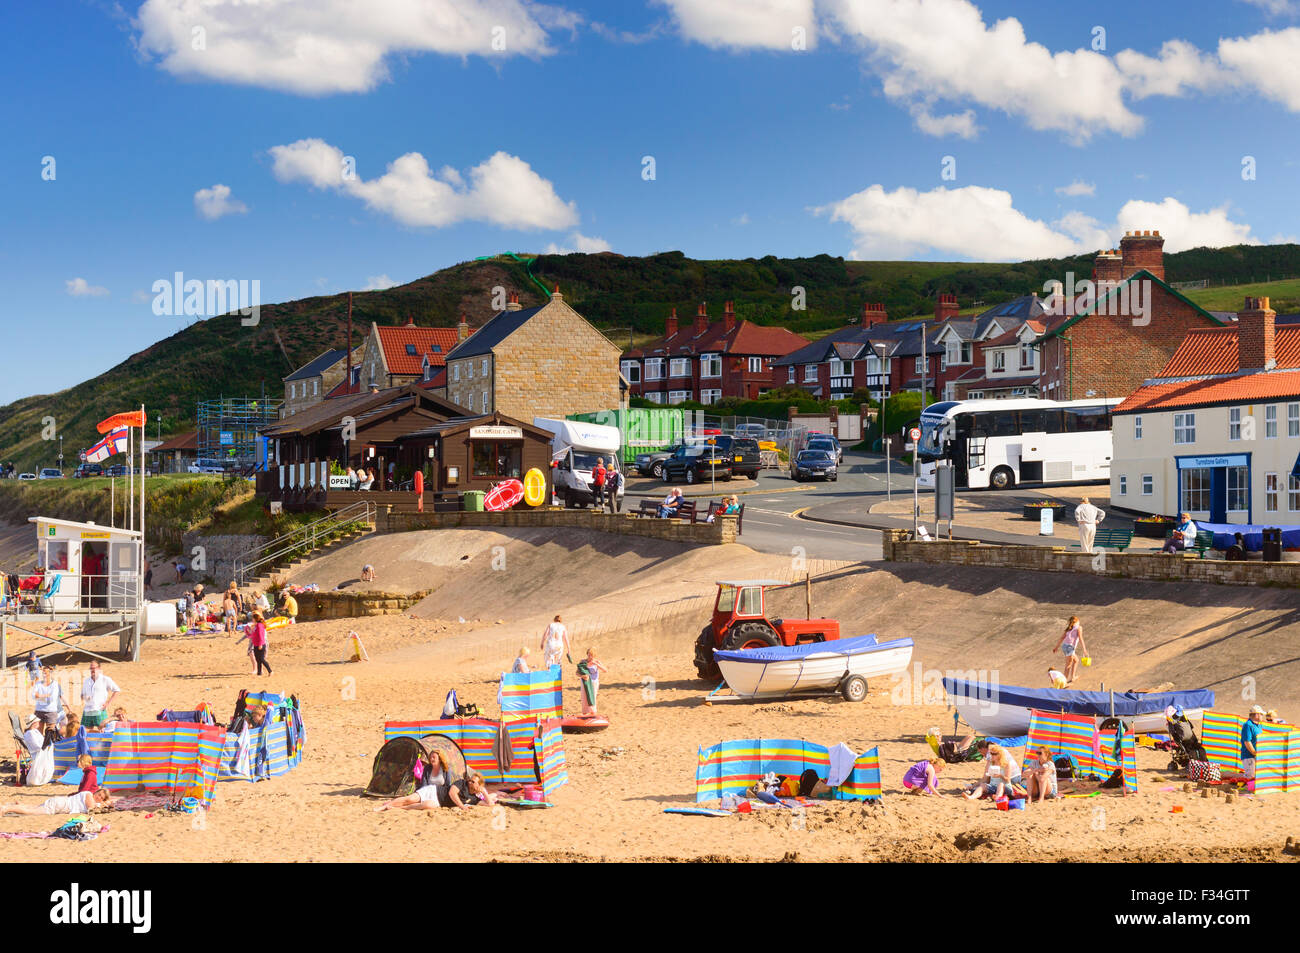 Il y a beaucoup de familles bénéficiant de l'été sur la plage de sandsend, Angleterre Banque D'Images